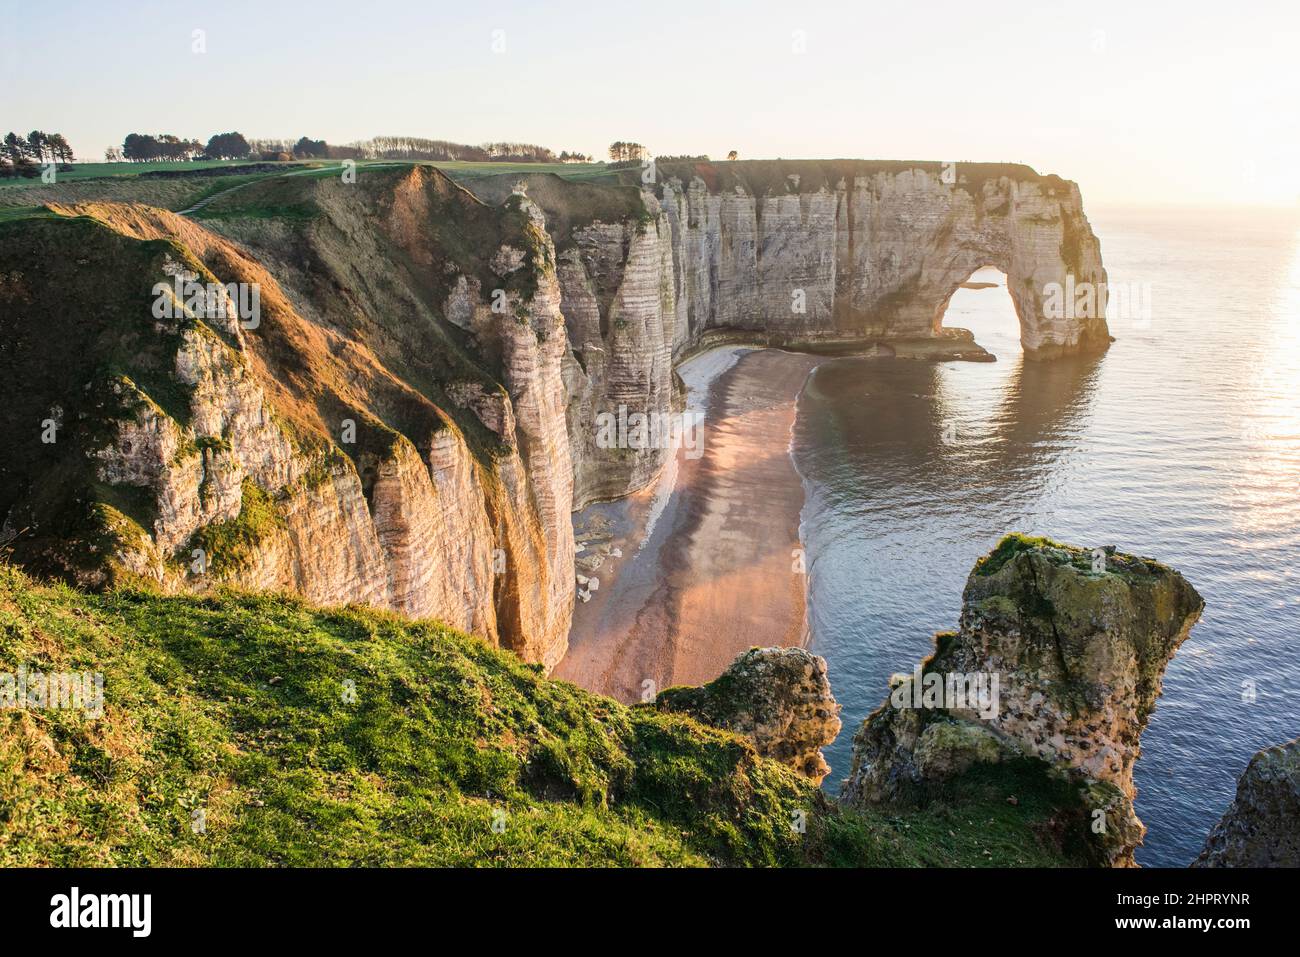 Schöner Strand und Klippen in der Normandie in der Nähe von Etretat Stadt bei Sonnenuntergang, Frankreich. Beliebtes Reiseziel und Touristenattraktion in Europa Stockfoto